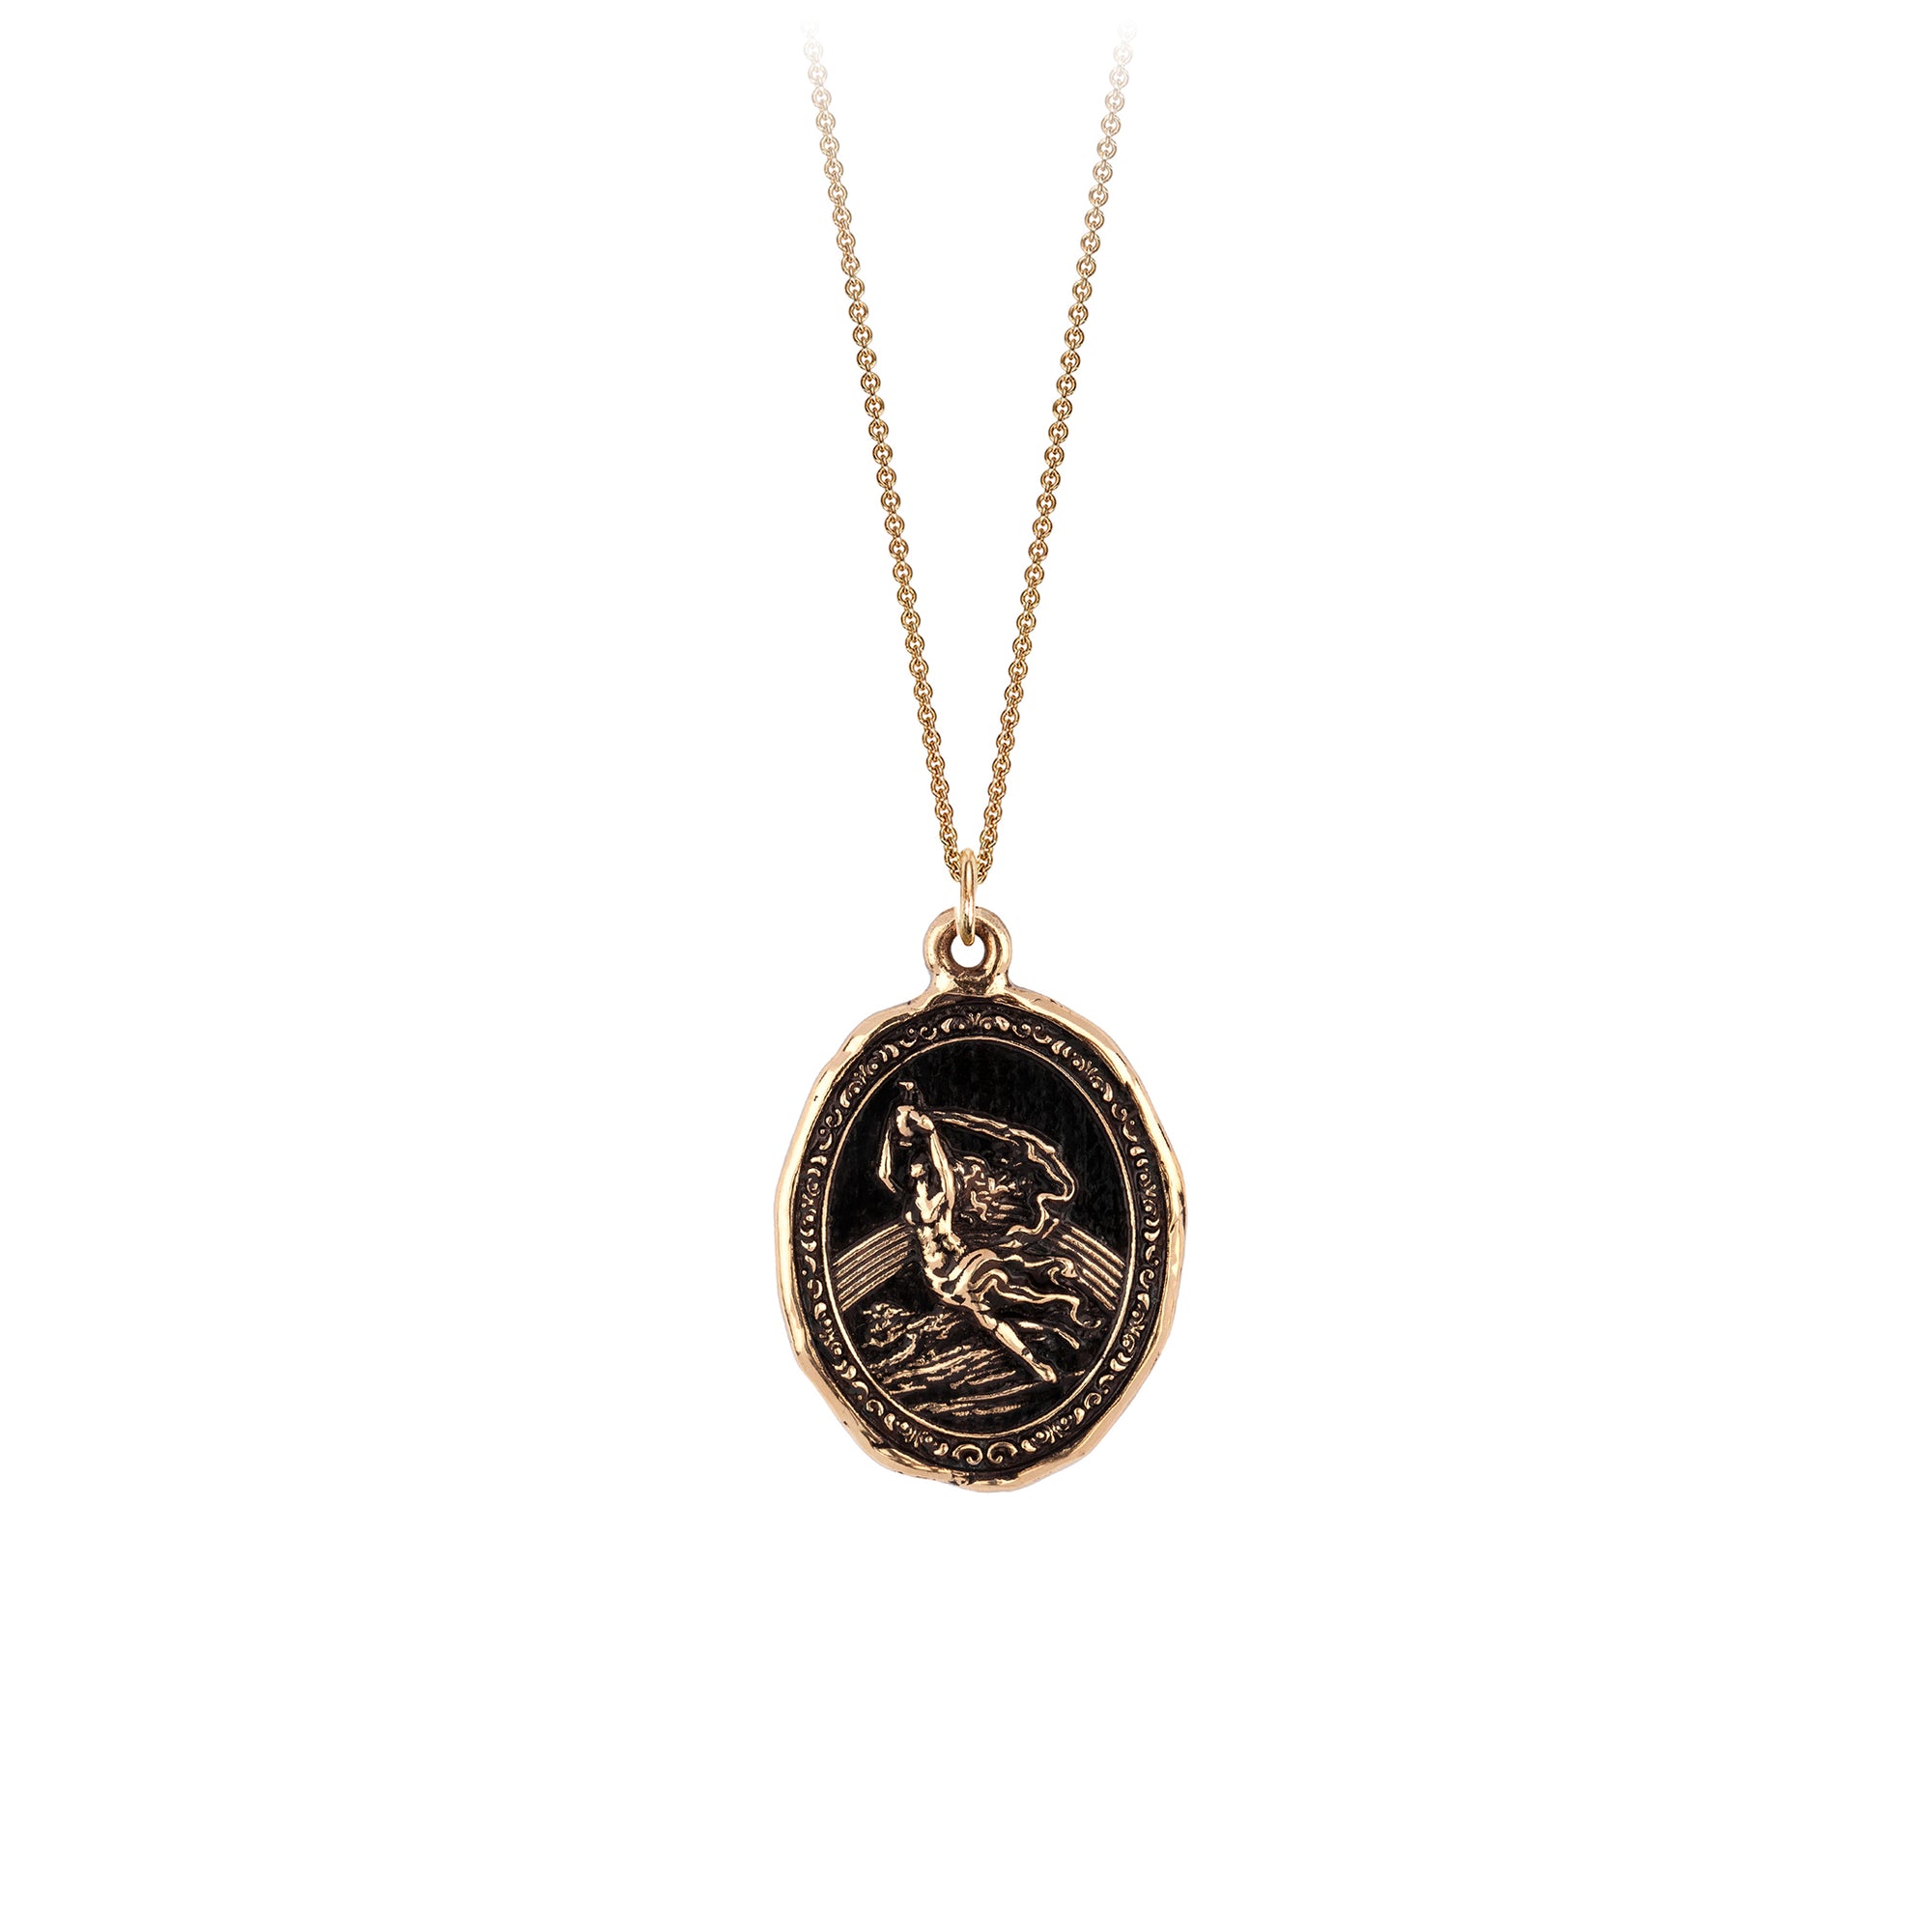 A 14k gold chain featuring our 14k gold Iris goddess talisman.